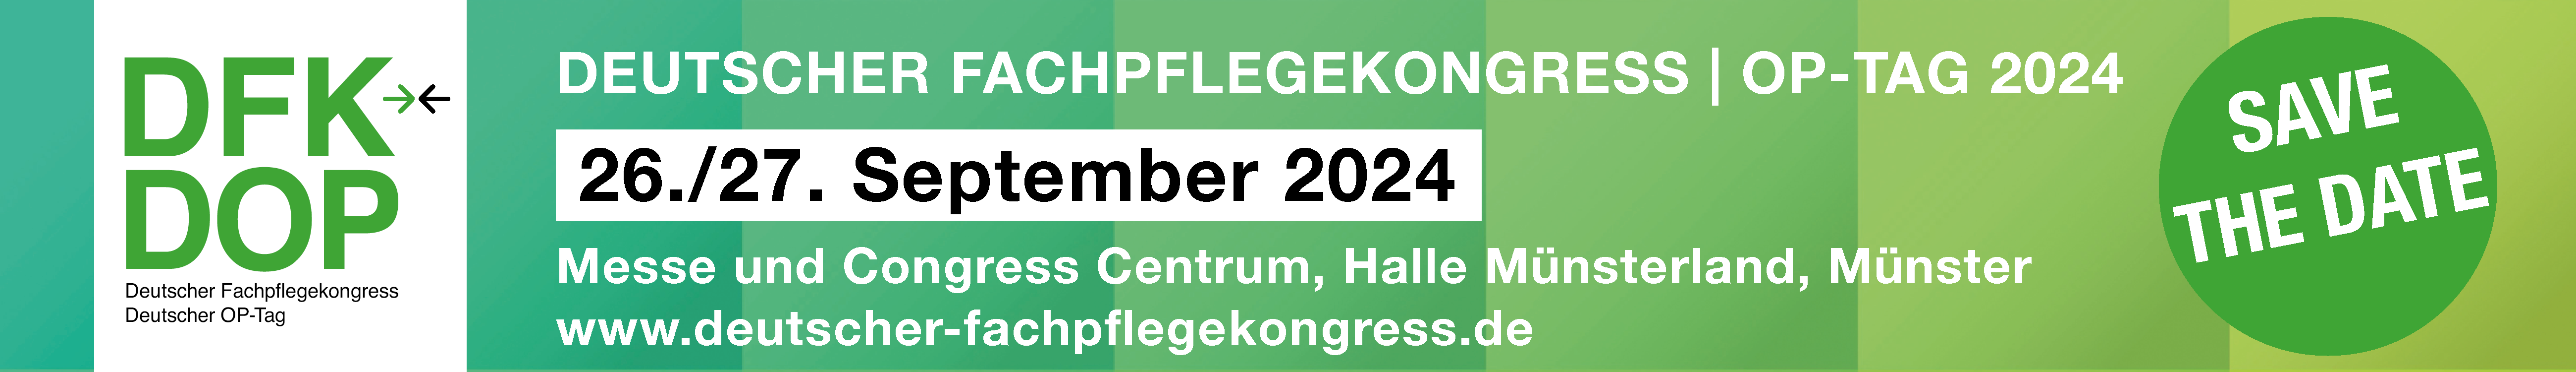 DFK DOP am 26. bis 27.09.2024 in Münster